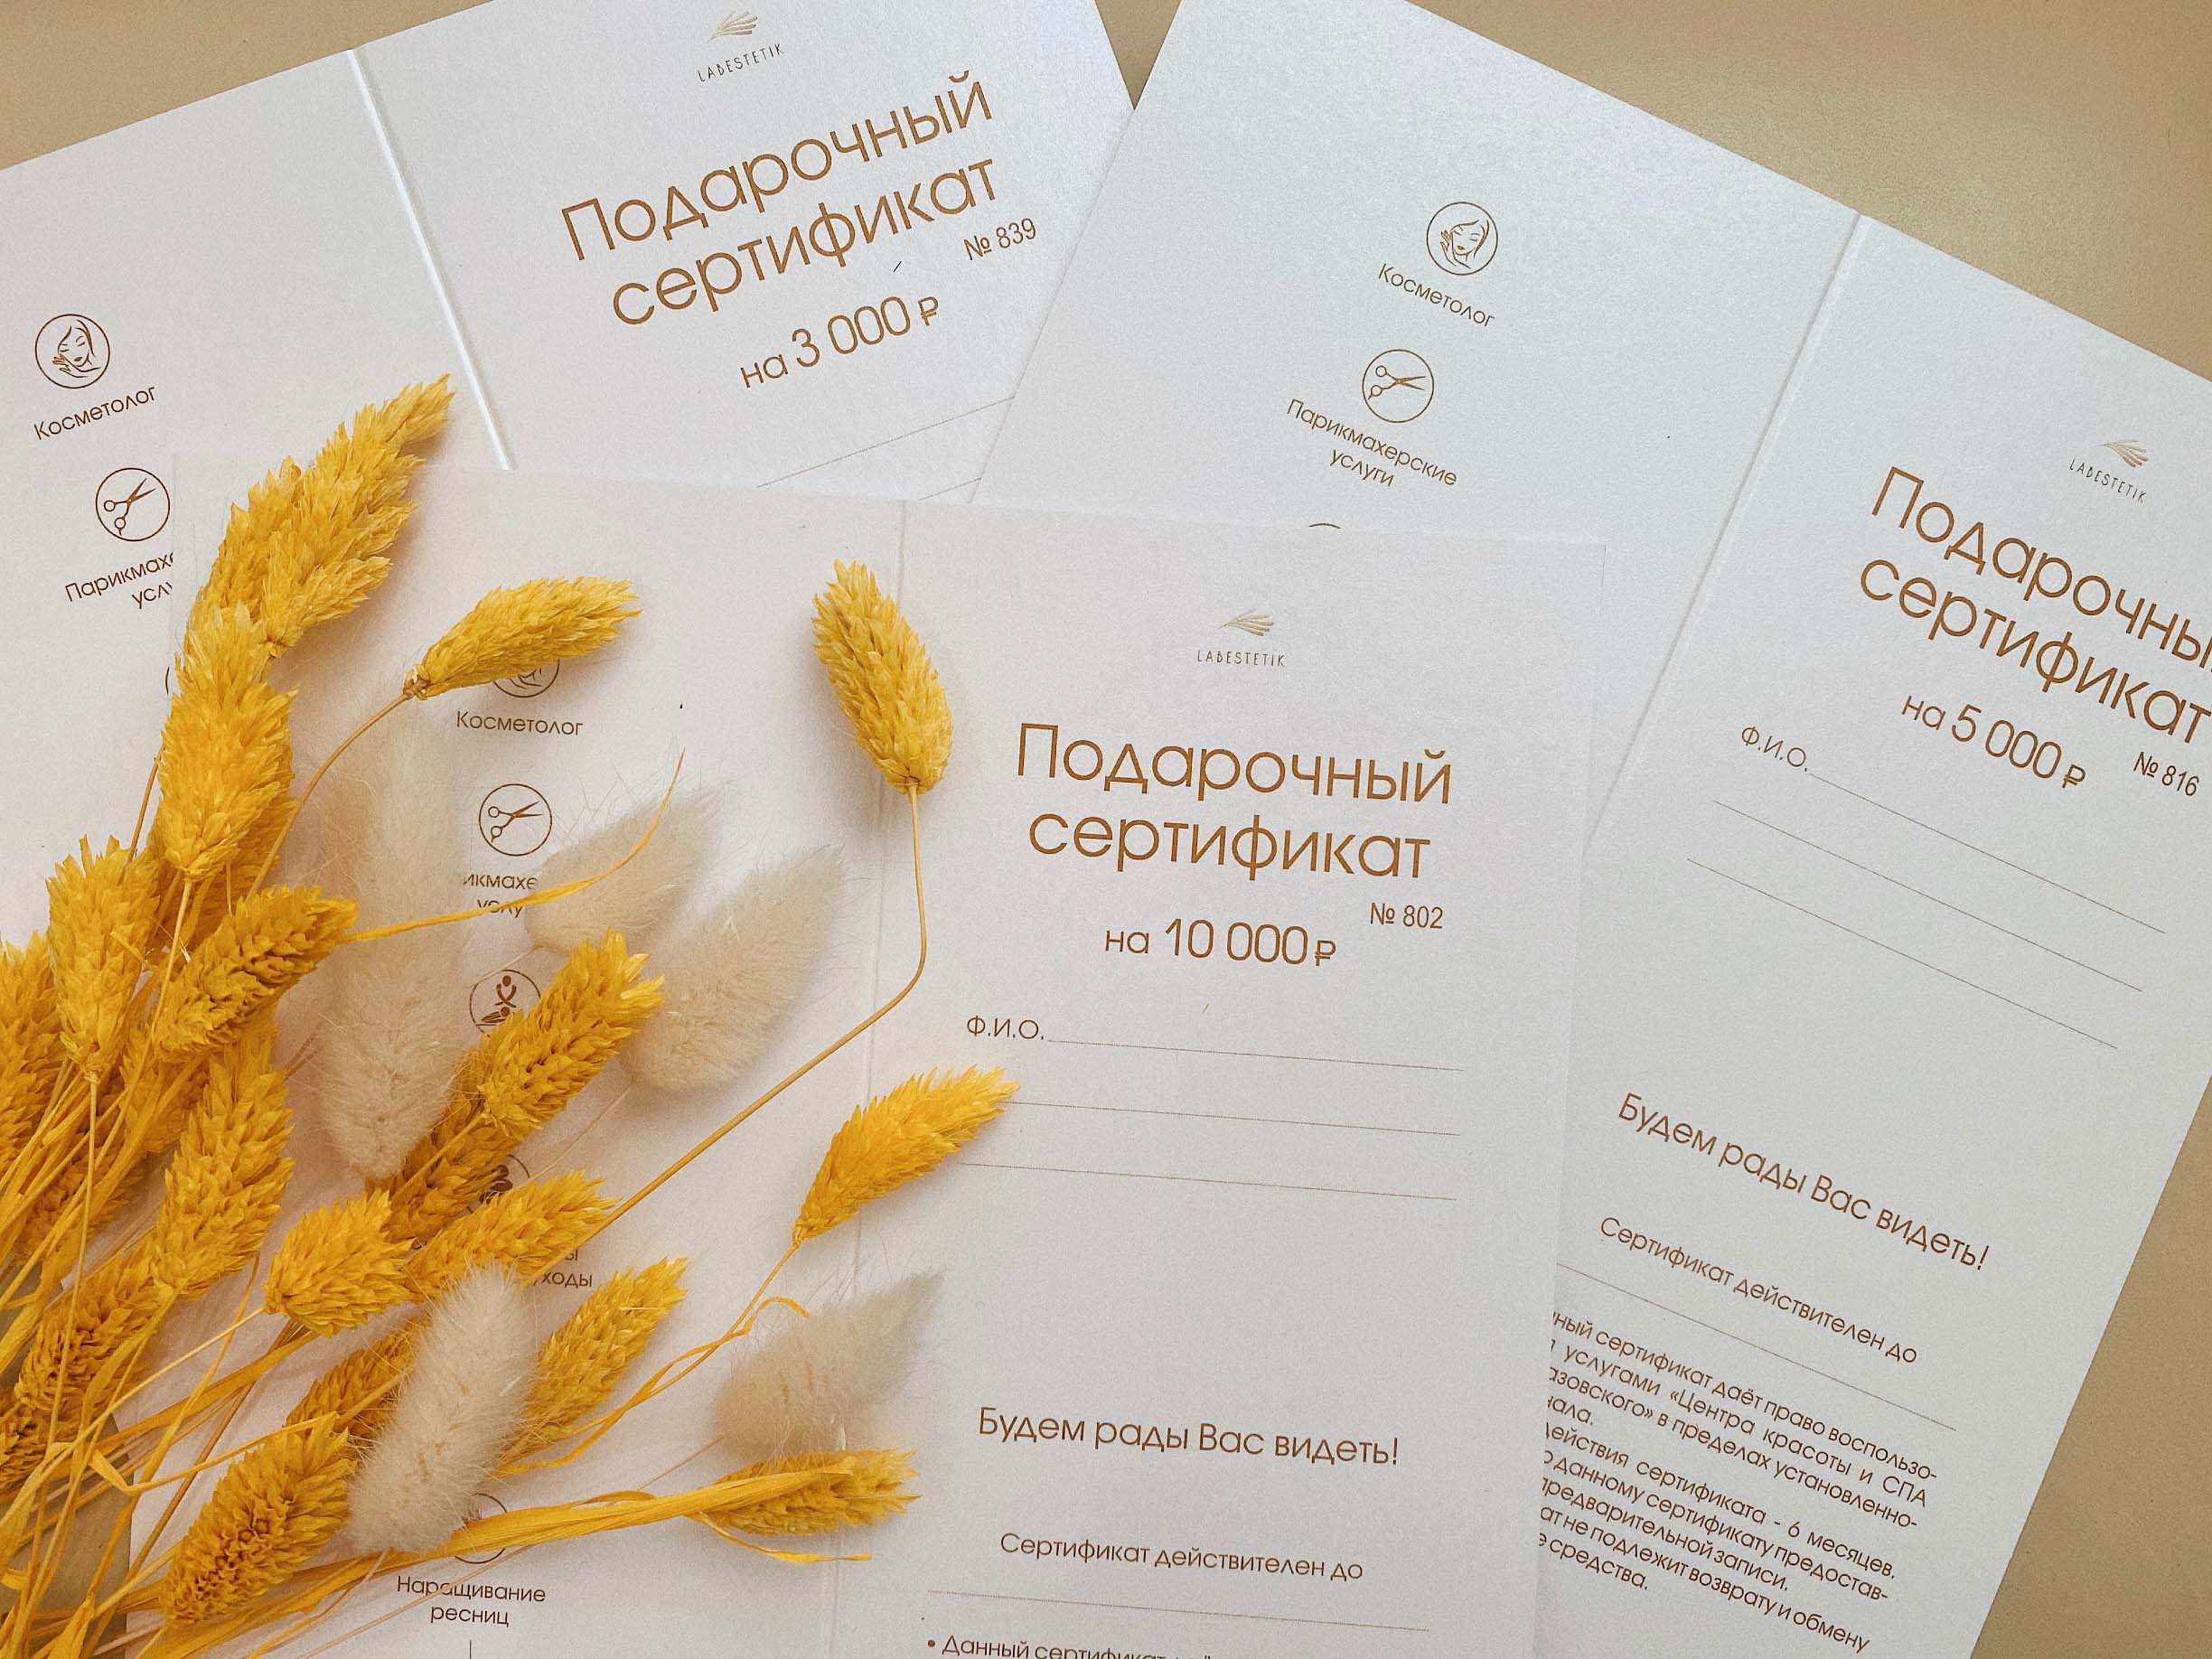 Купить подарочный сертификат в СПА-салон для женщин и мужчин в Москве, массаж и spa процедуры